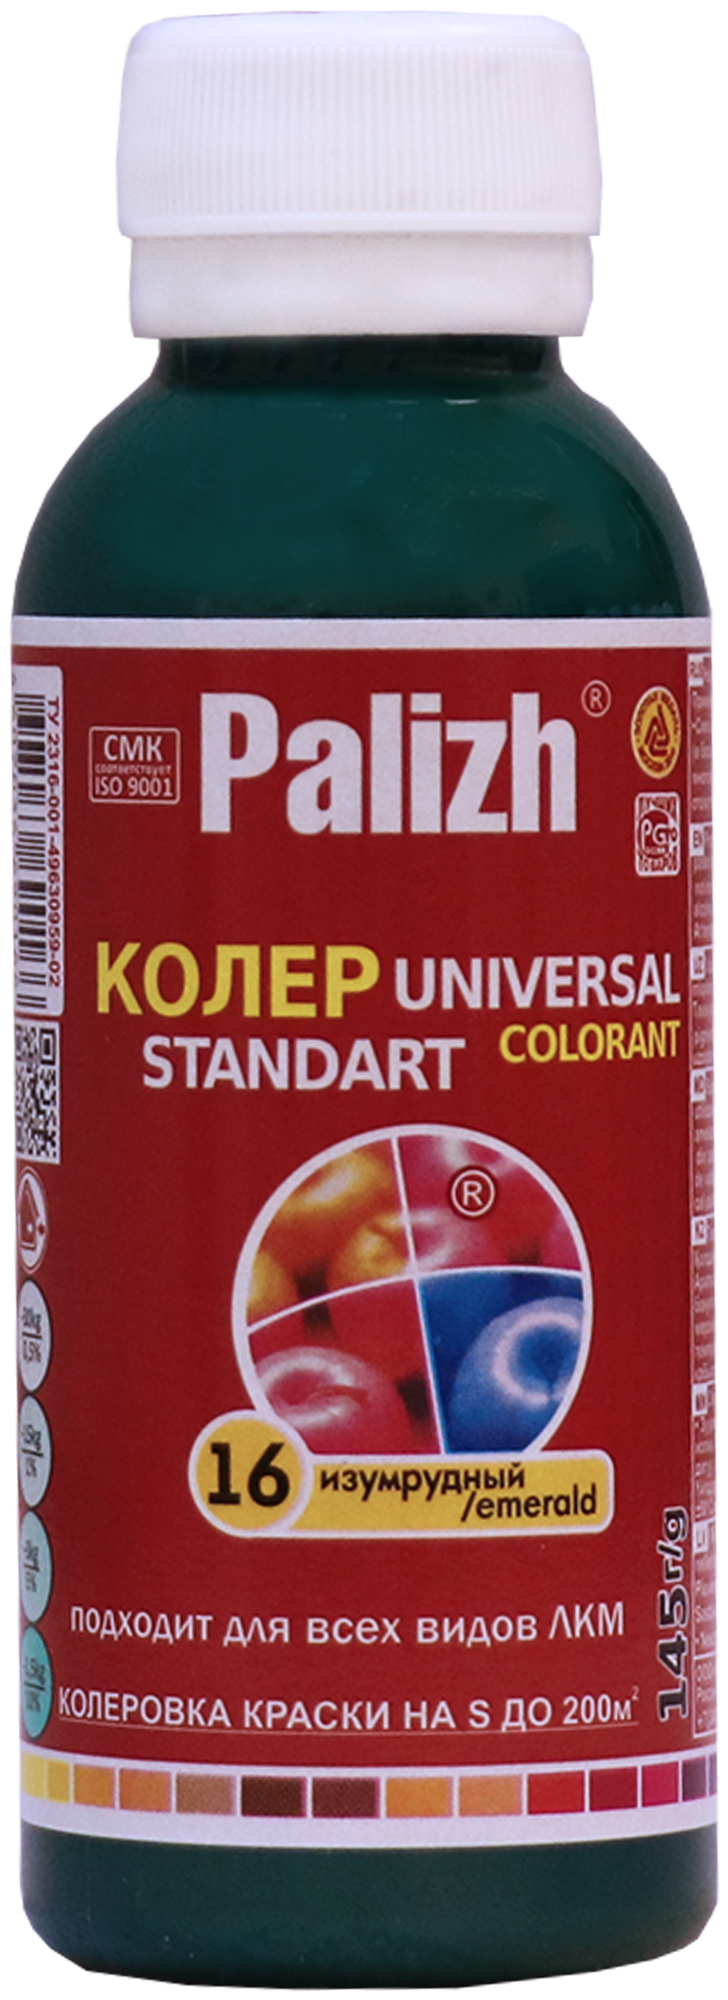 Колеровочная паста Palizh Universal Standart ST-16 изумрудный 0.1 л